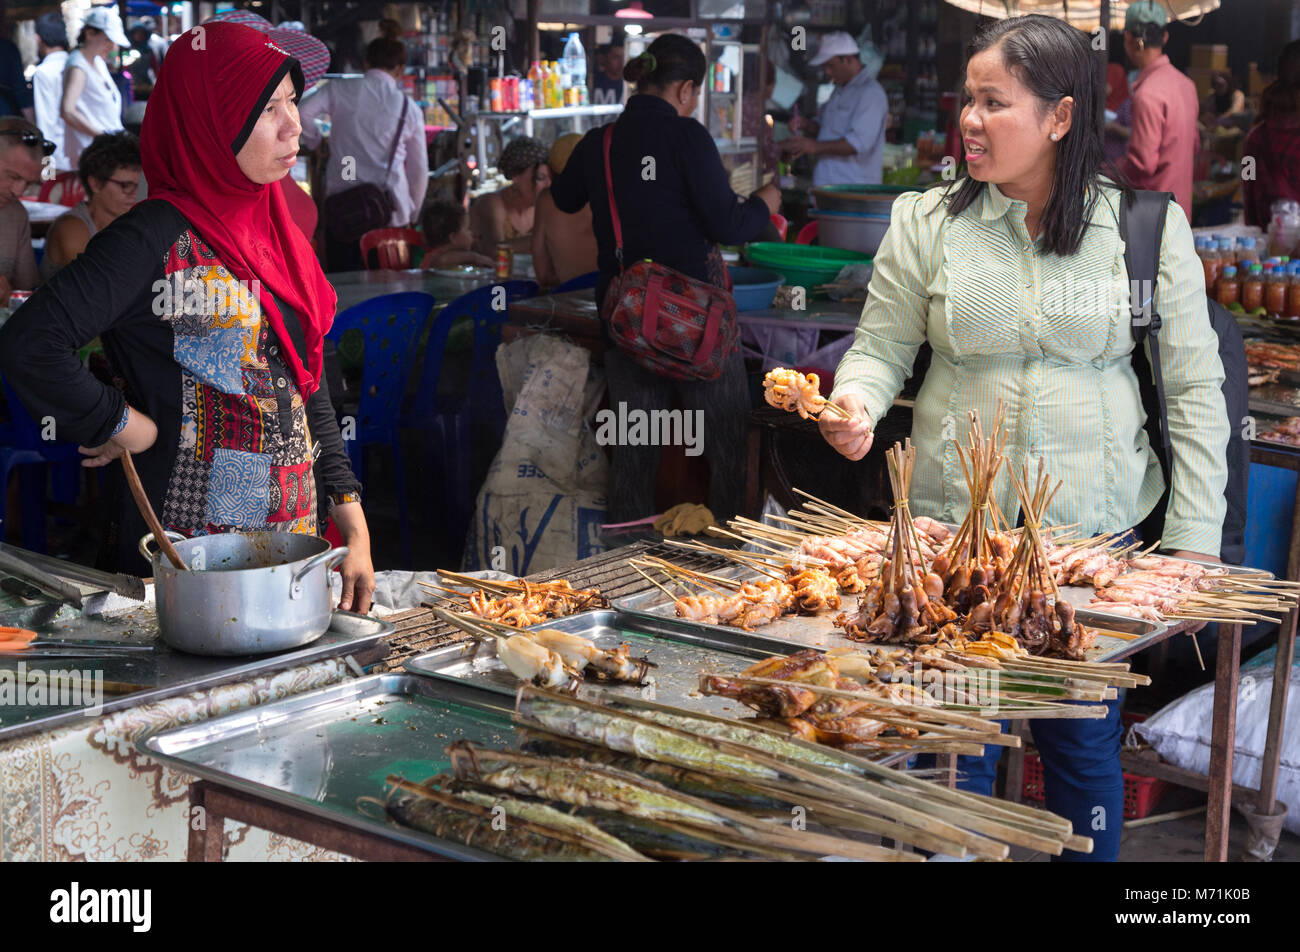 Kep, Cambodge - femme acheter de la nourriture à un décrochage du poisson, Crabe de Kep Kep, le Cambodge, l'Asie du Sud Est Banque D'Images